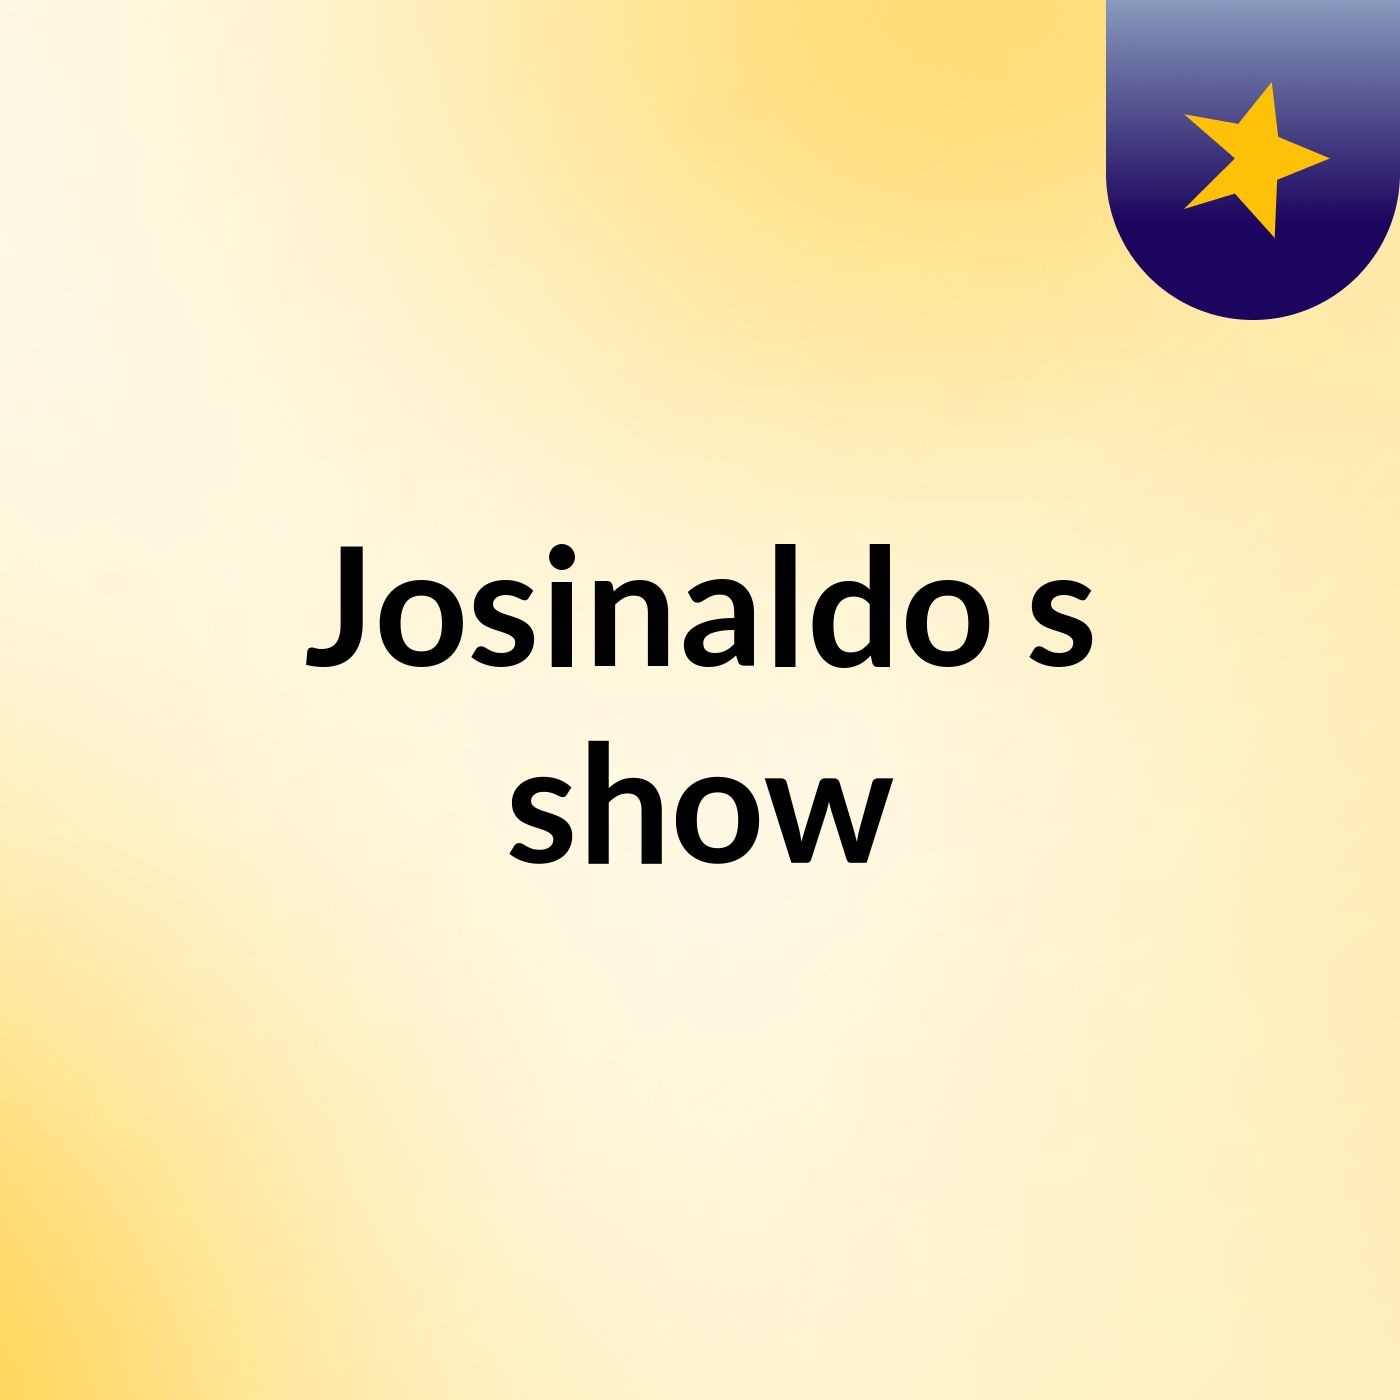 Josinaldo's show